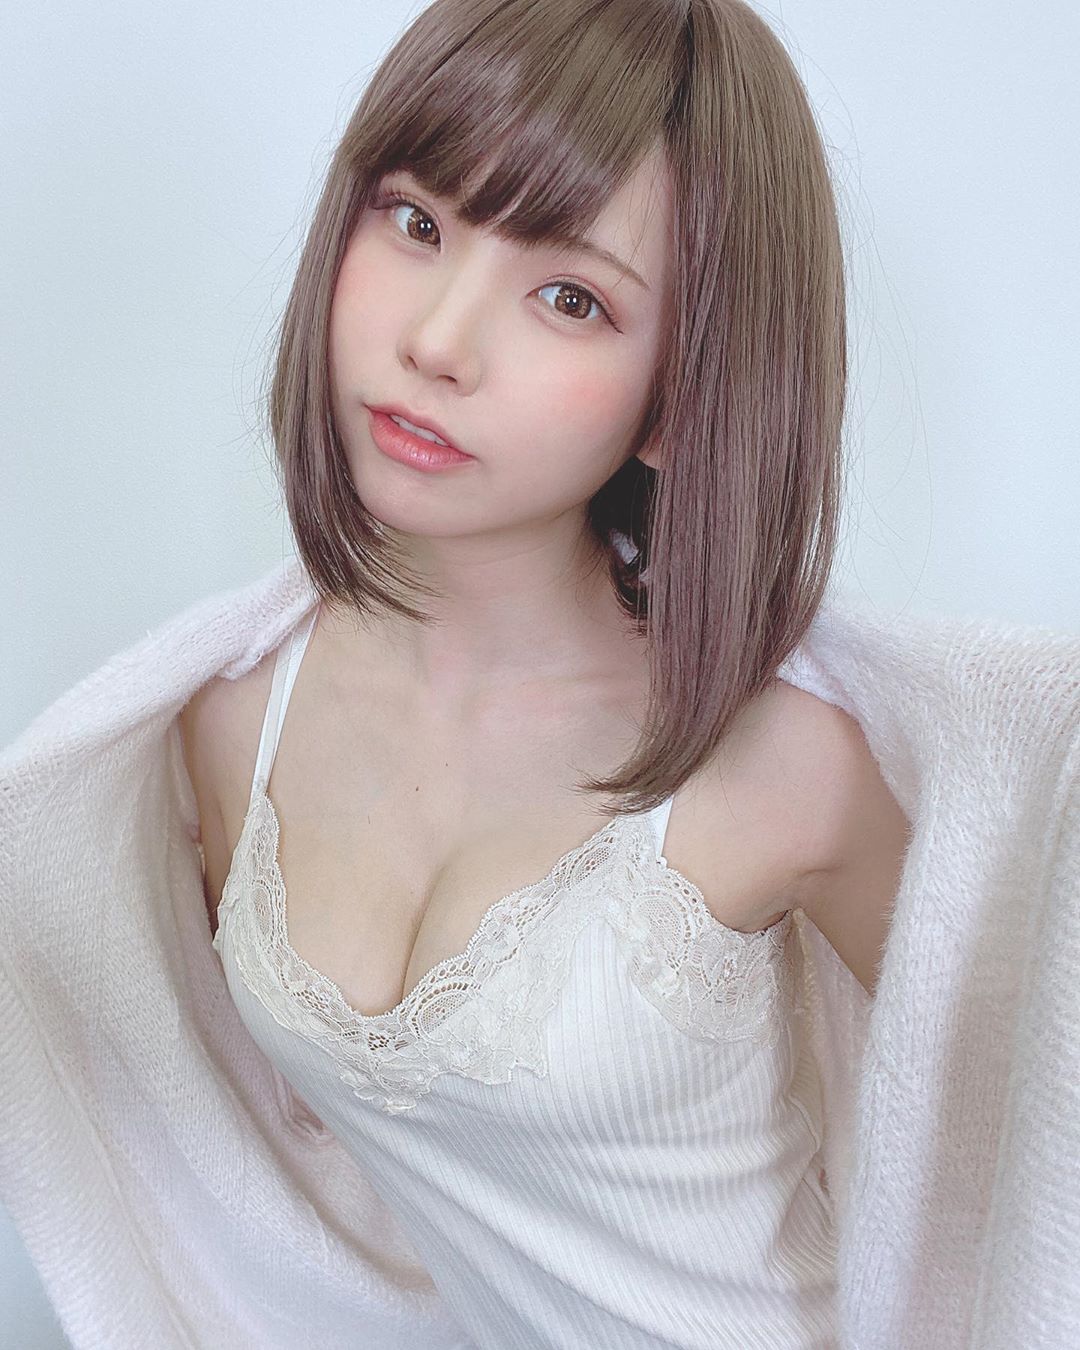 日本第一美女 COSER！最新「Enako」性感写真画面曝光，邪恶视角谁受得了&#8230;